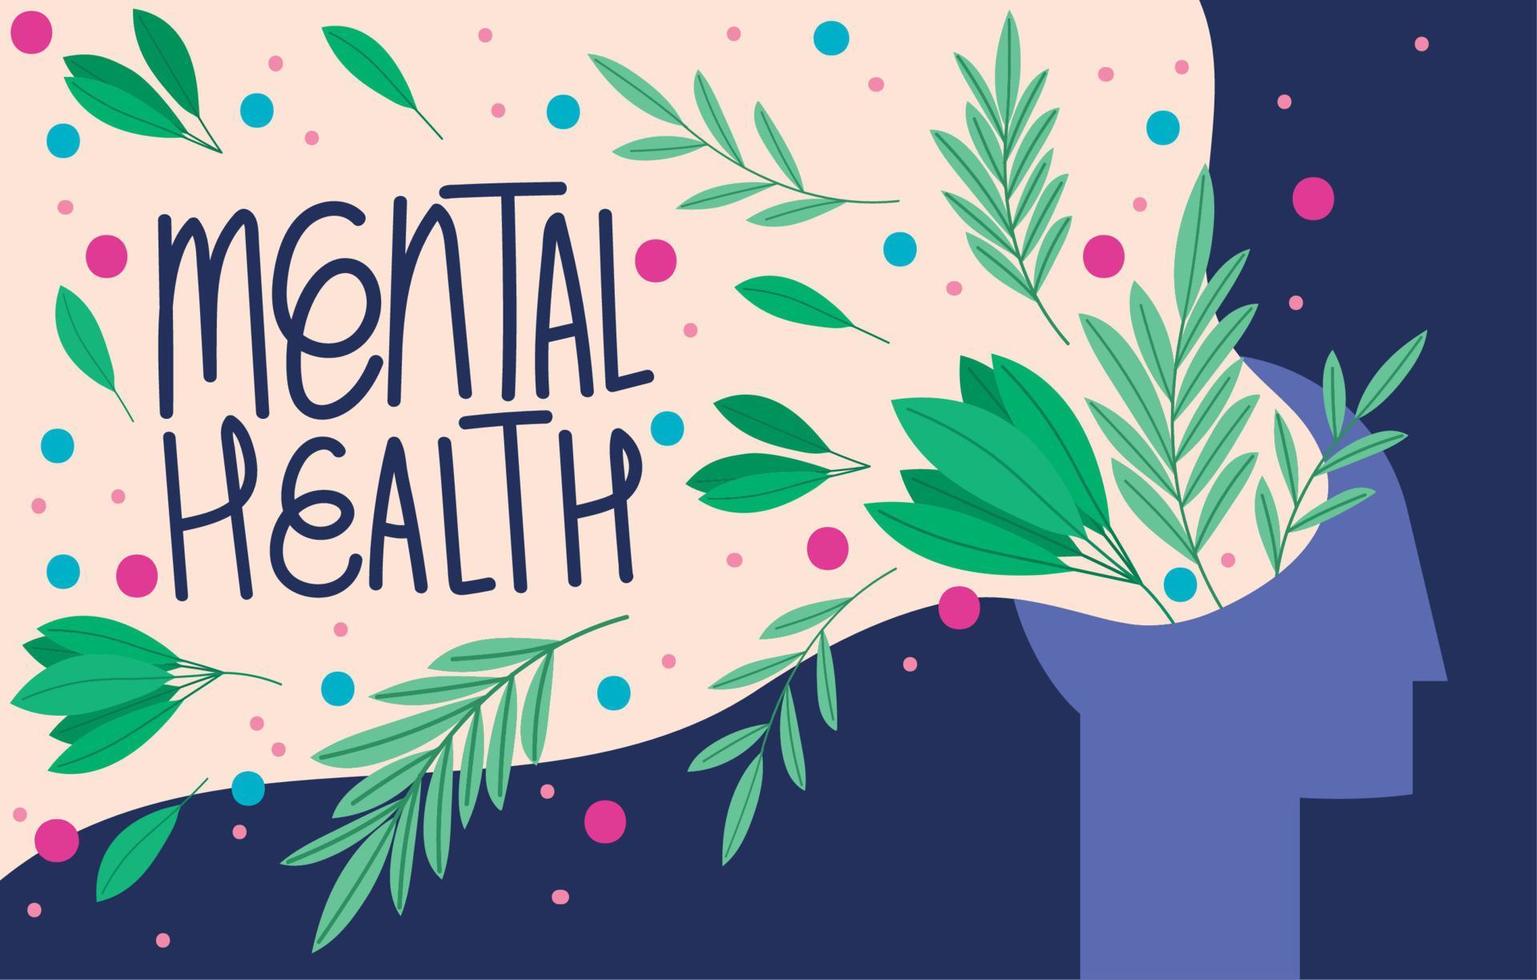 mental health illustration vector